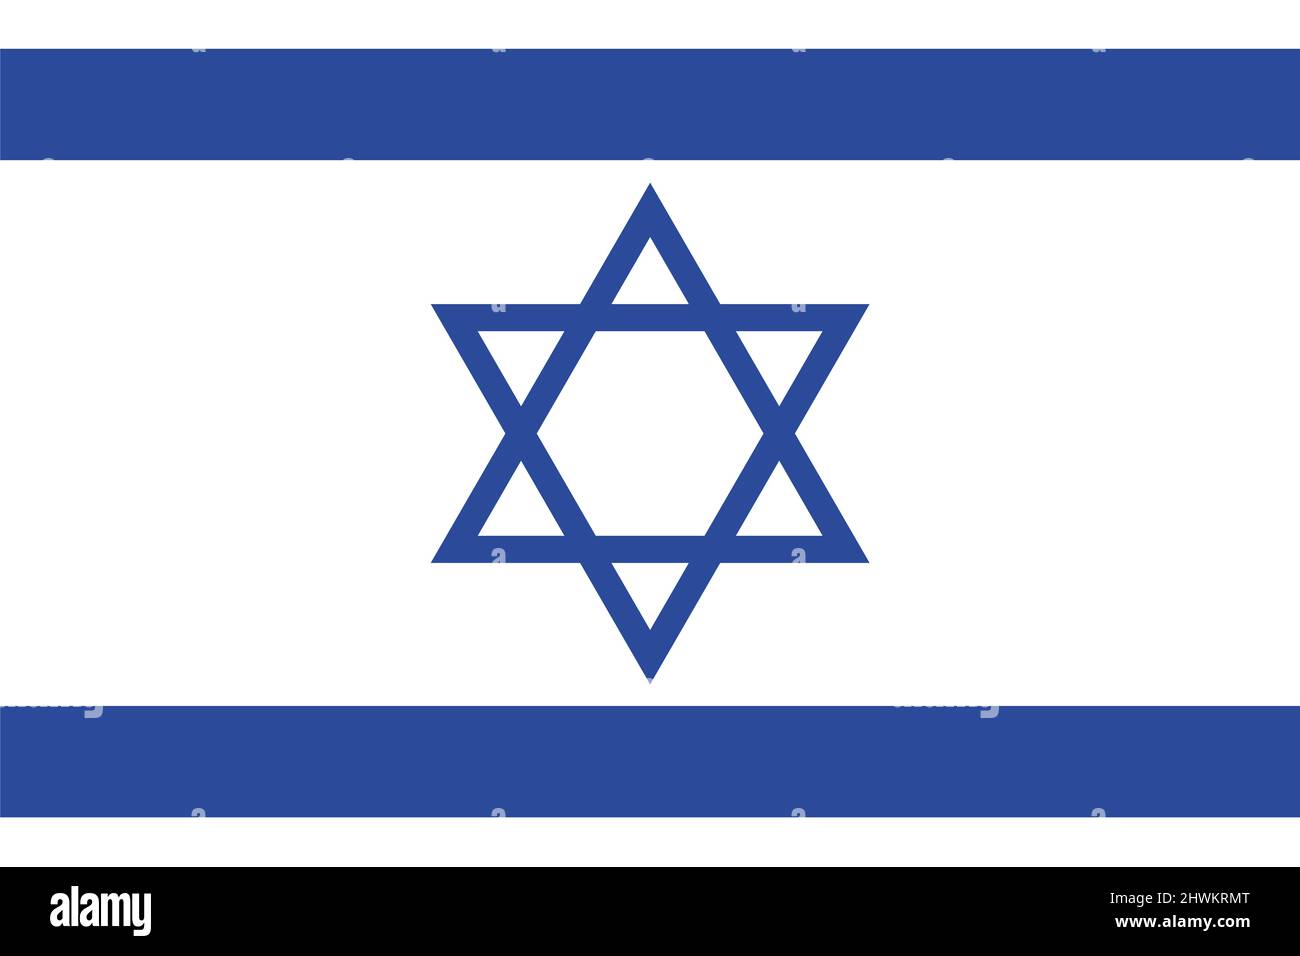 Israel flag. Isolated national flag of Israel. Horizontal design. Illustration Stock Photo